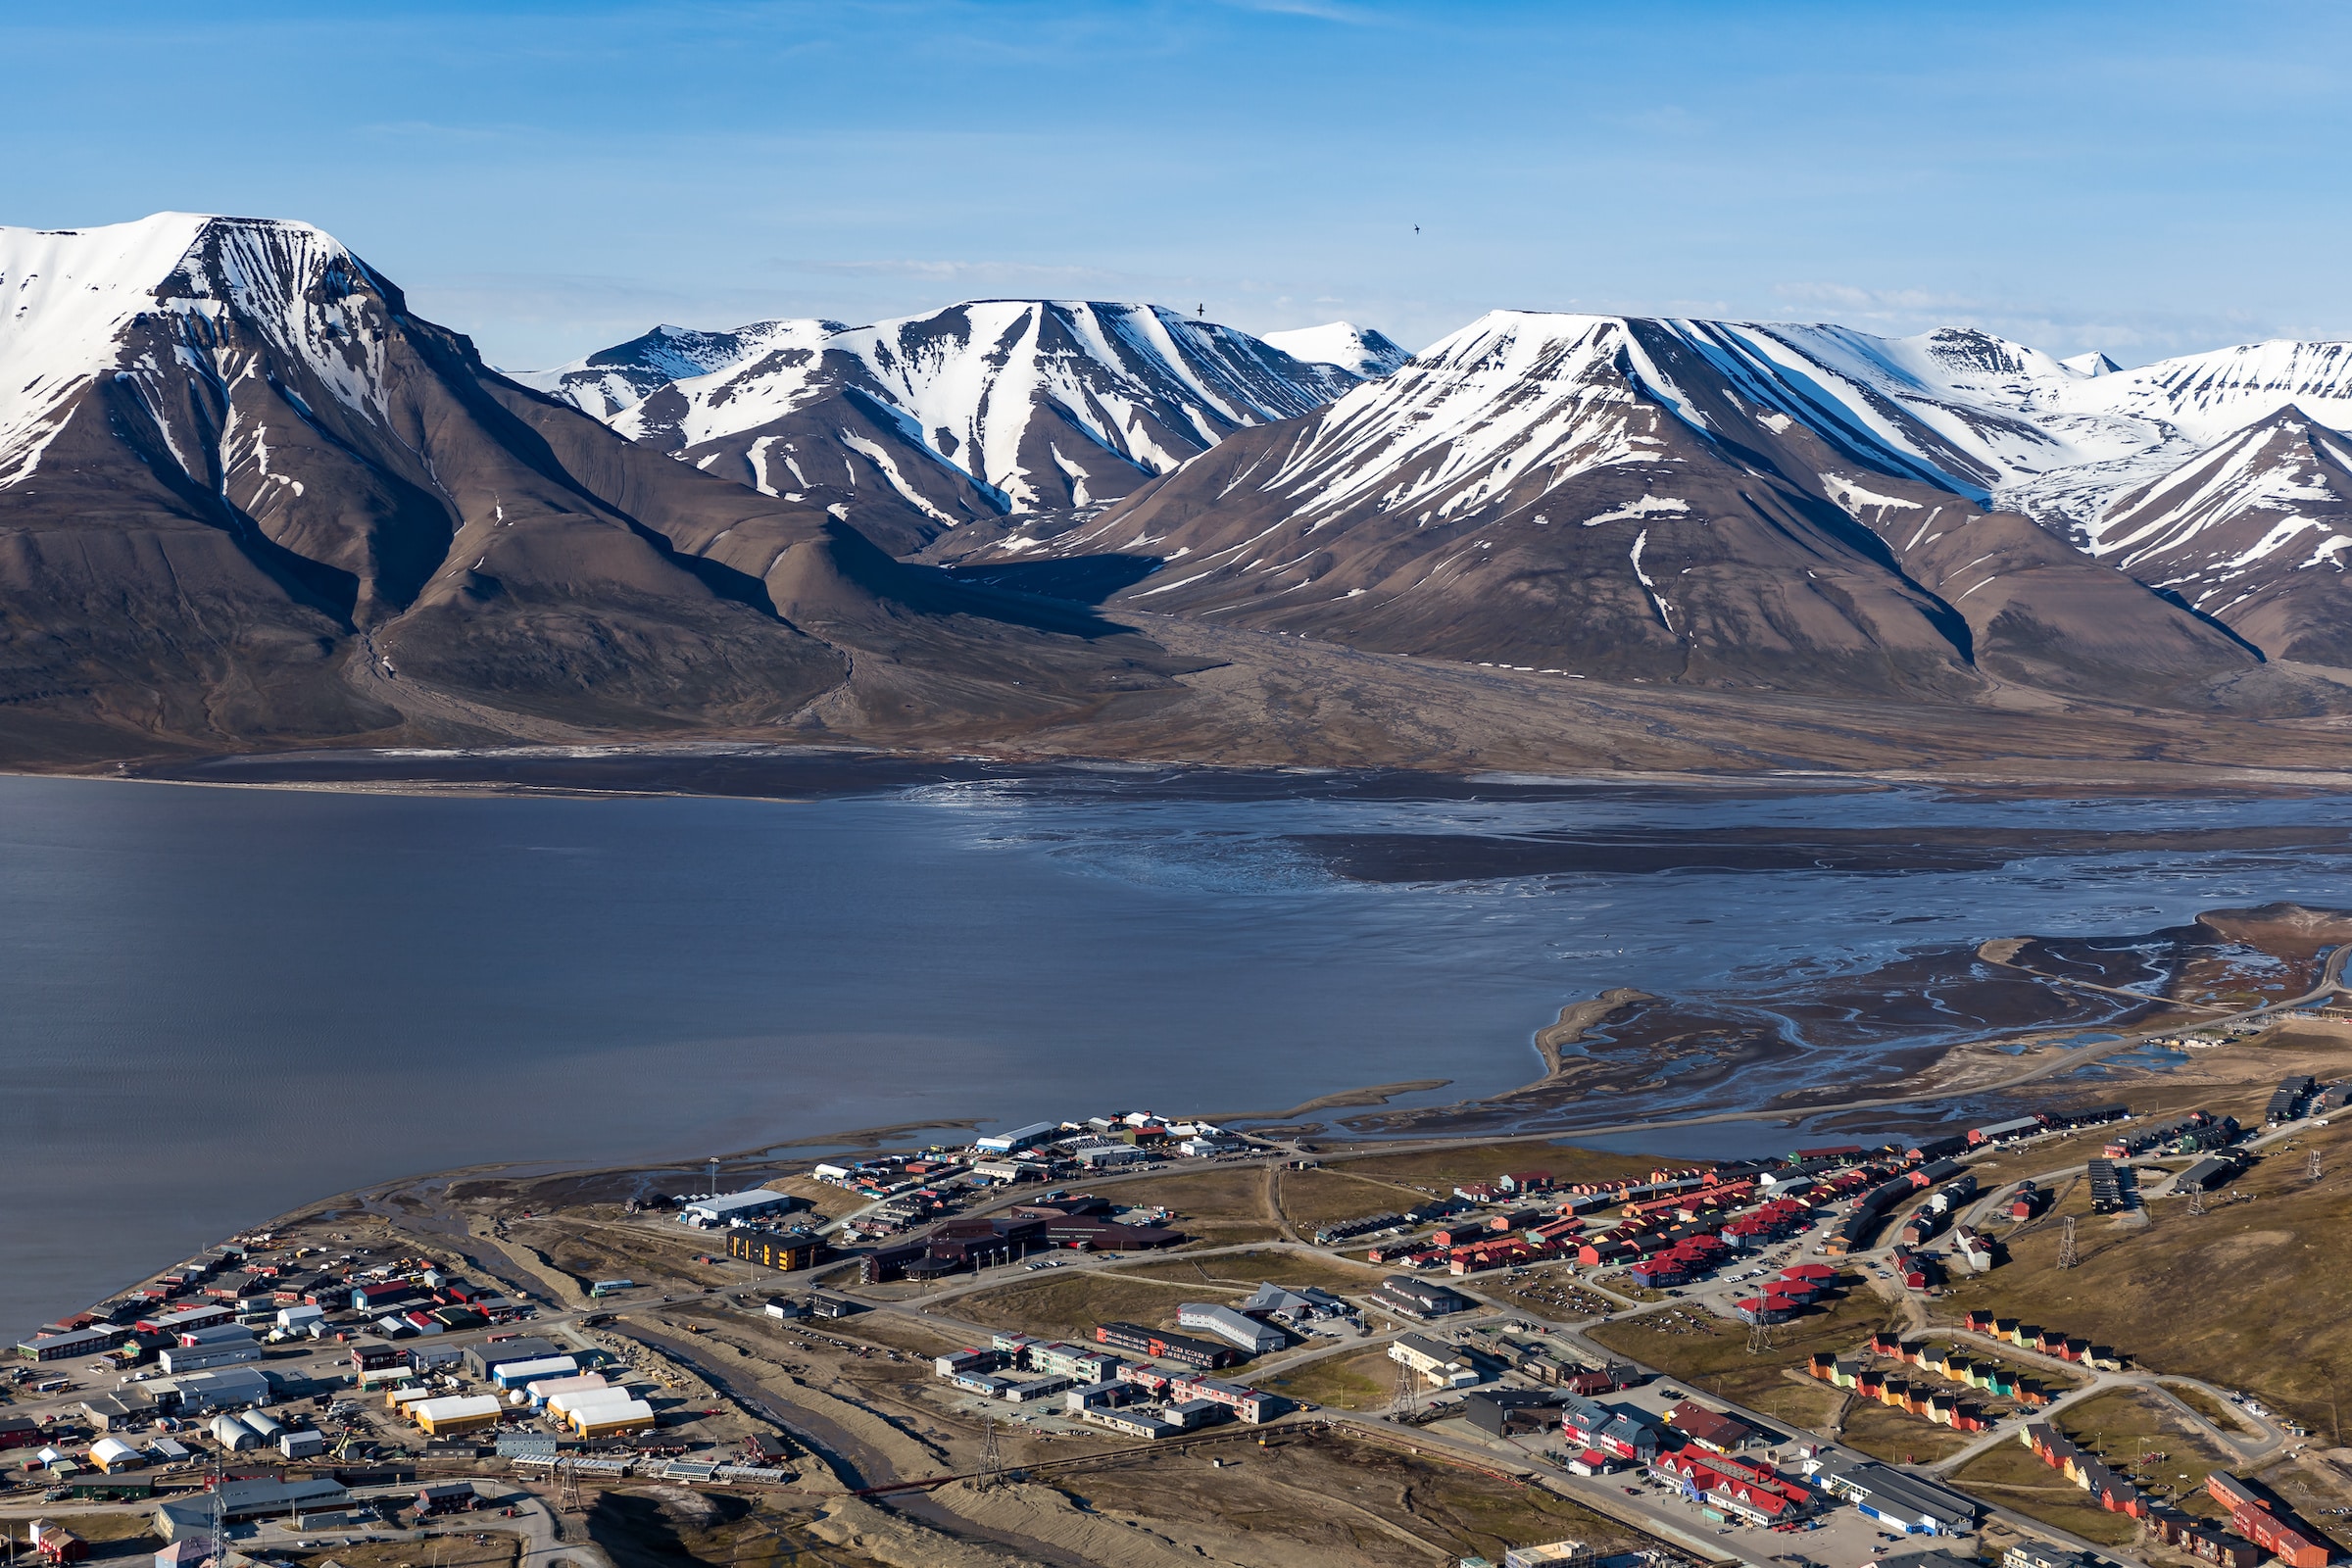 Svalbard och Jan Mayen